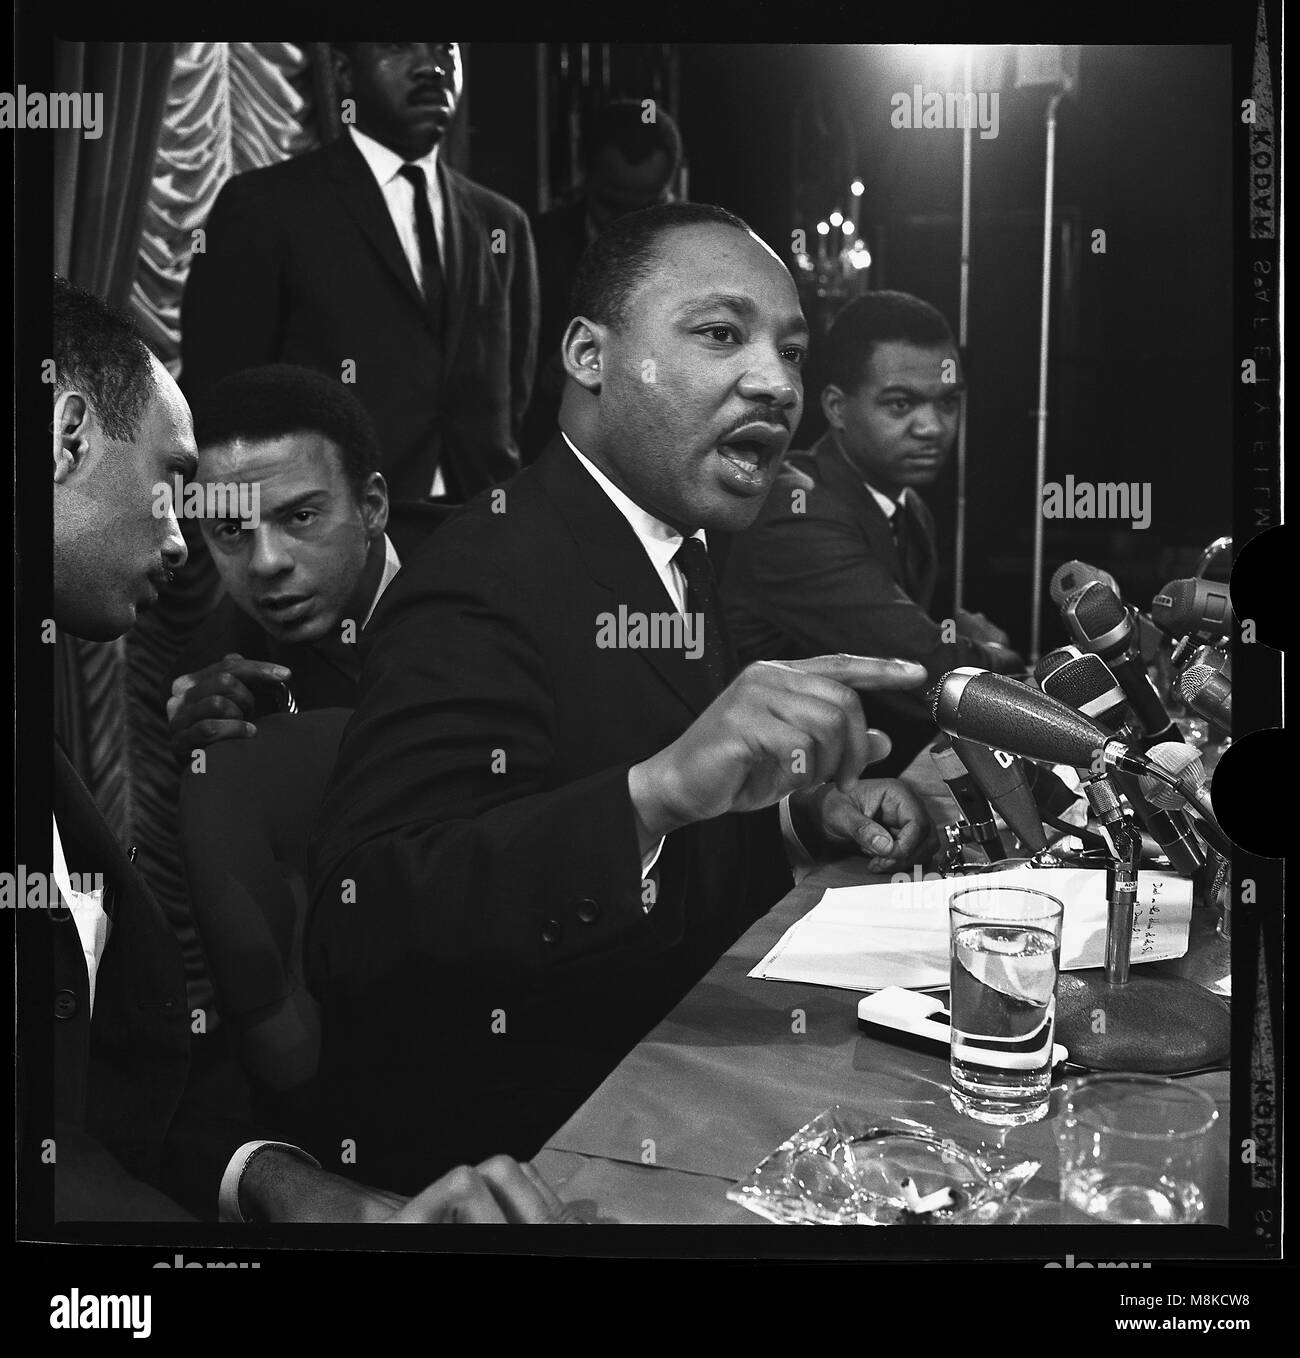 Martin Luther King con Andrew Young y Al Raby en conferencia de prensa en el Sahara Hotel de Chicago, Ill. rey anuncia la campaña "ciudad abierta" para combatir los problemas de los pobres en el norte. Este es el primer verdadero del CPCP campaña norte. Enero 7, 1966 Foto de stock